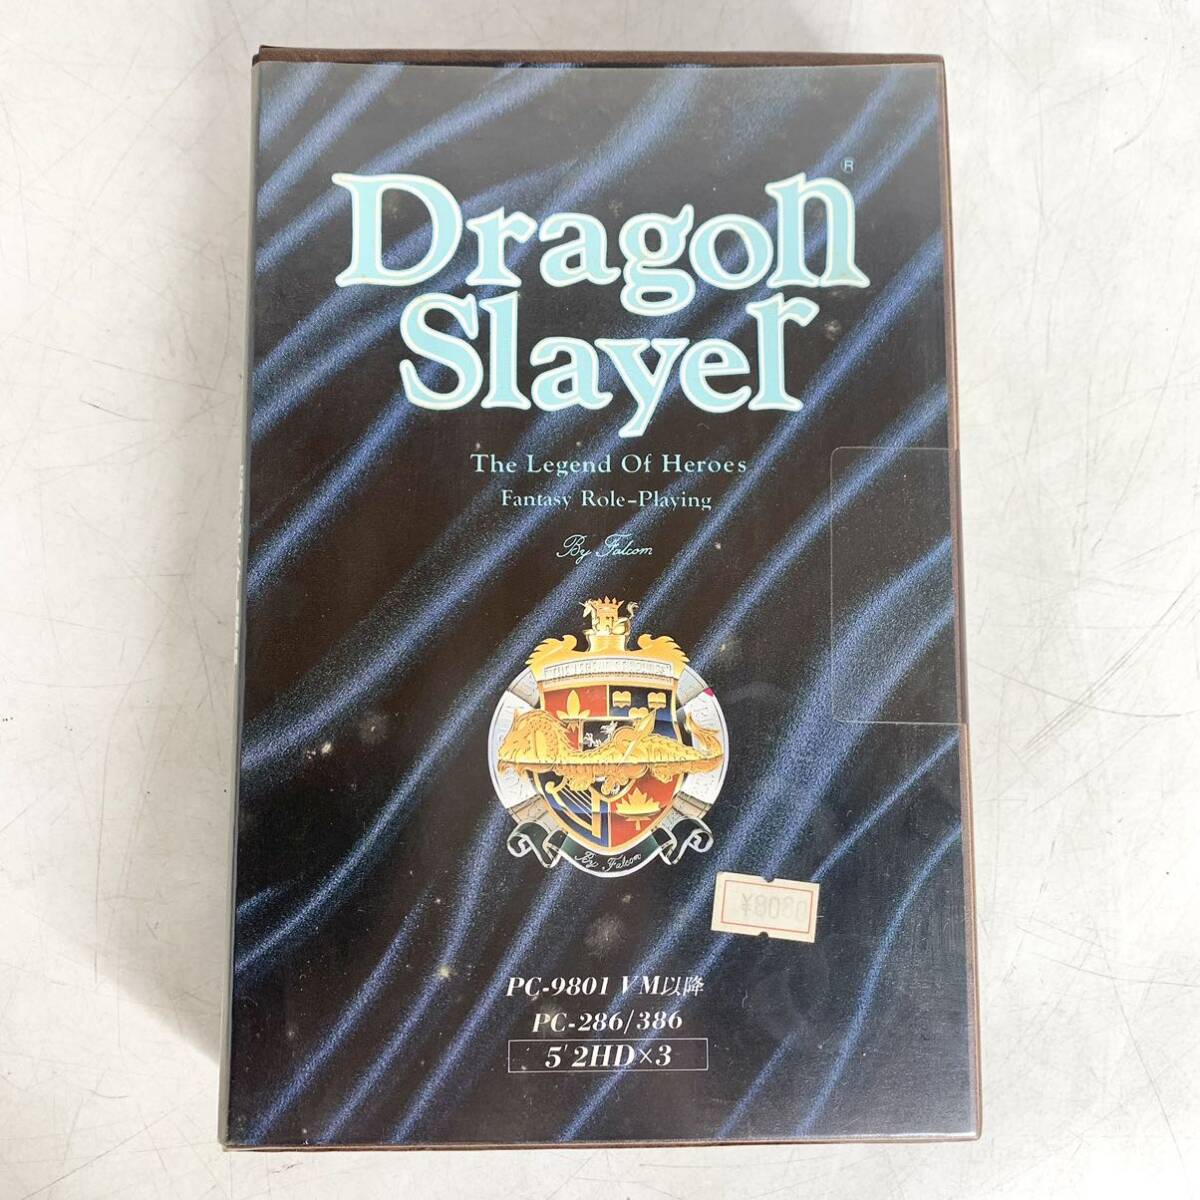  дракон  ... слой  　...　PC-9801　5 дюймов 　2HD ×3　 ретро 　 игра  　Dragon Slayer　...　Falcom　 товар в состоянии "как есть" 